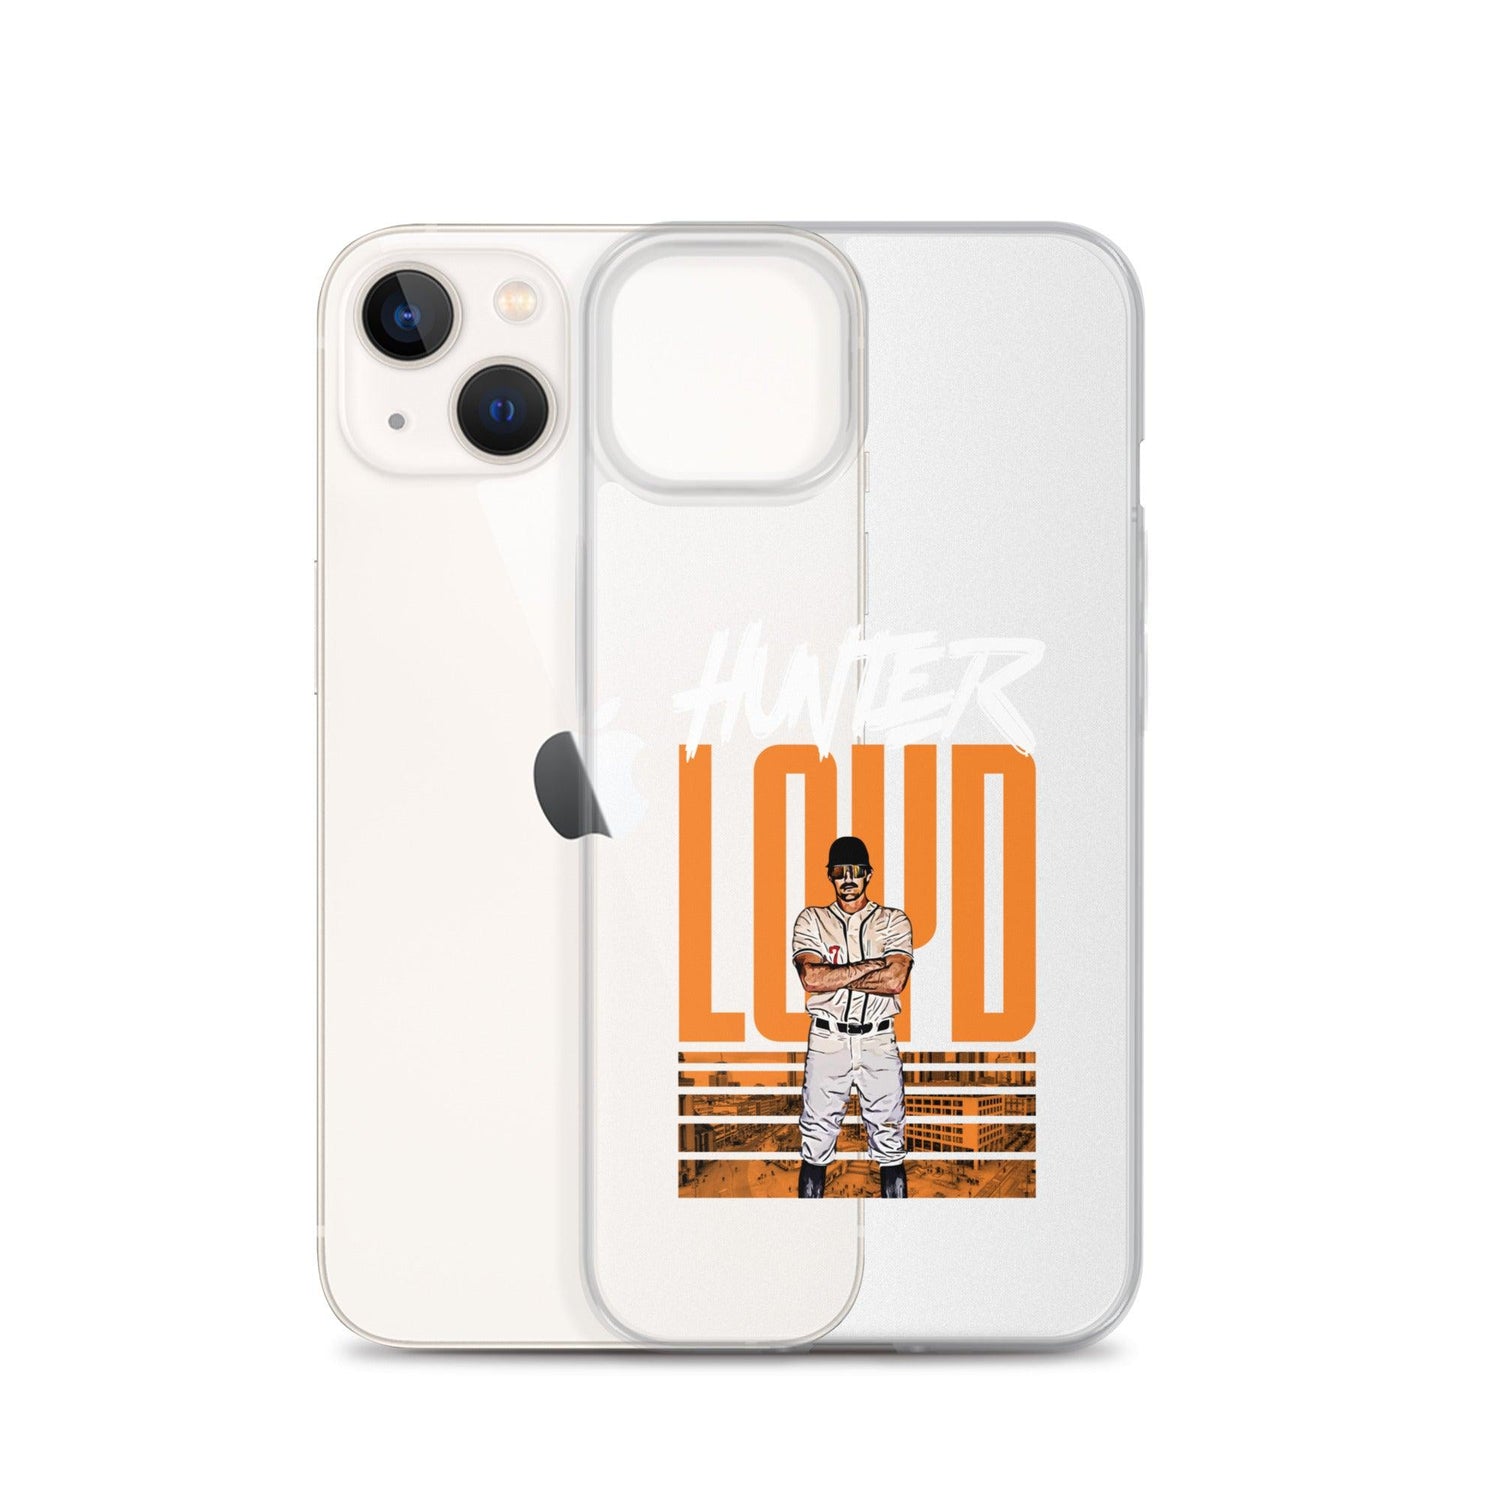 Hunter Loyd "Gameday" iPhone® - Fan Arch